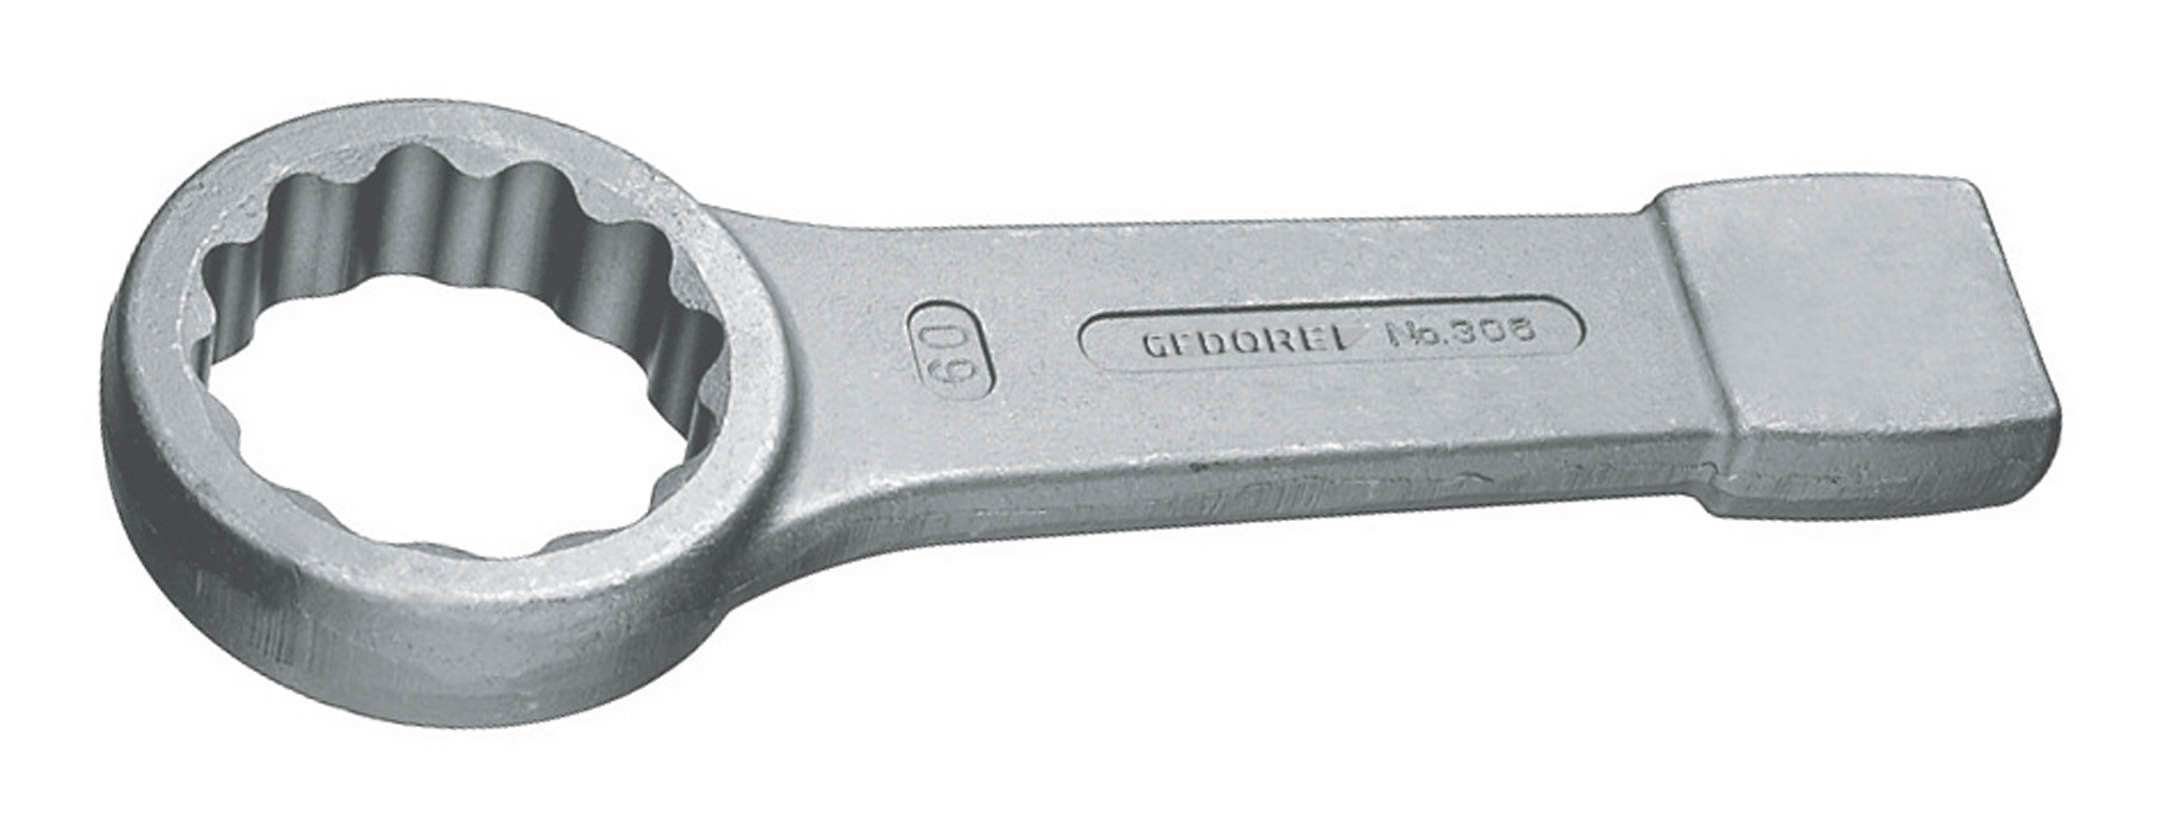 Gedore Ringschlüssel, Schlag DIN7444 95 mm